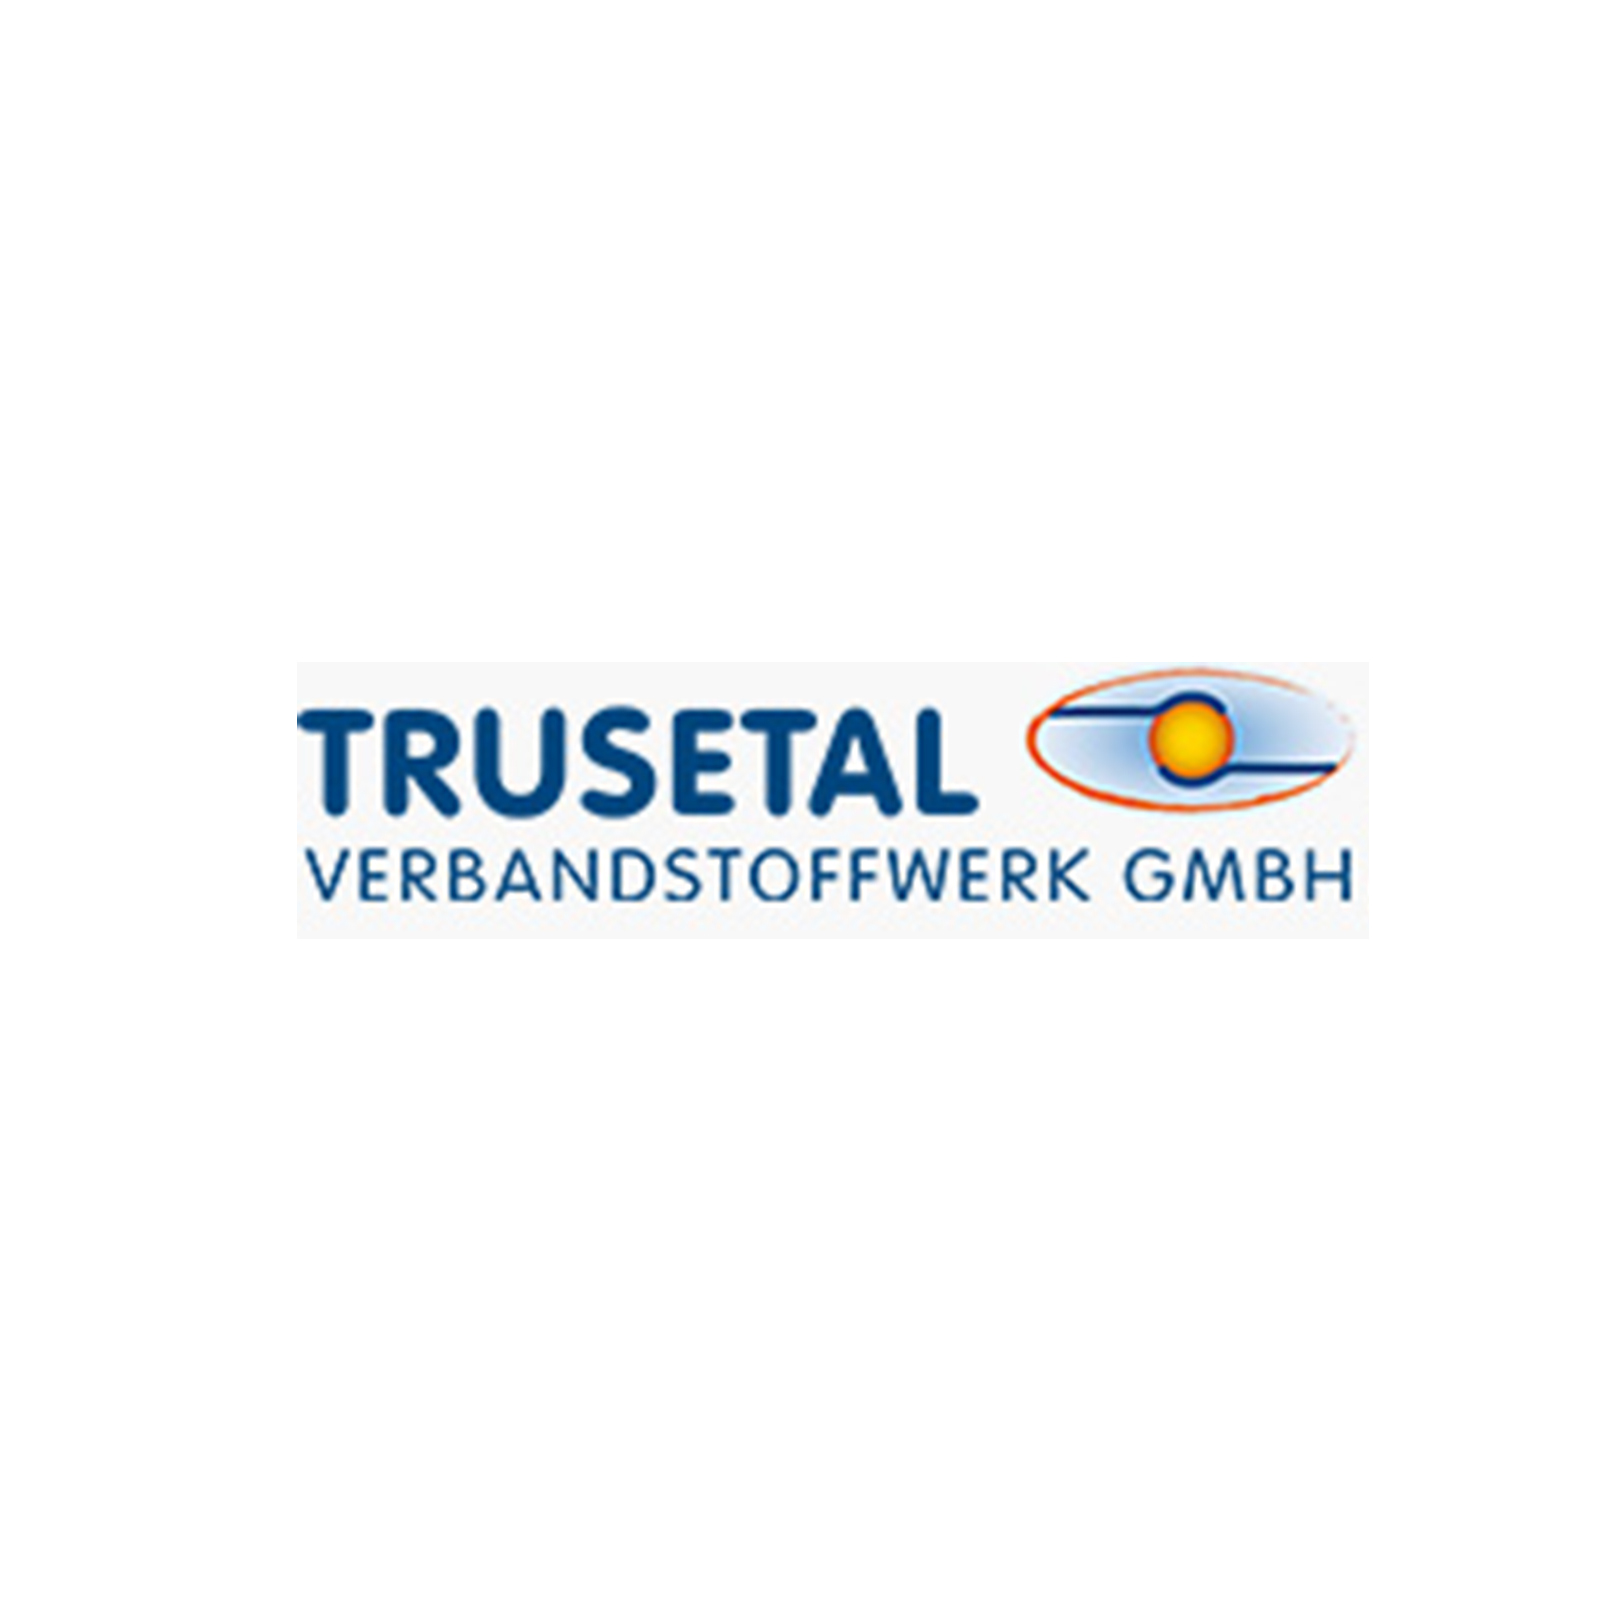 Trusetal Verbandstoffwerk GmbH [30052]